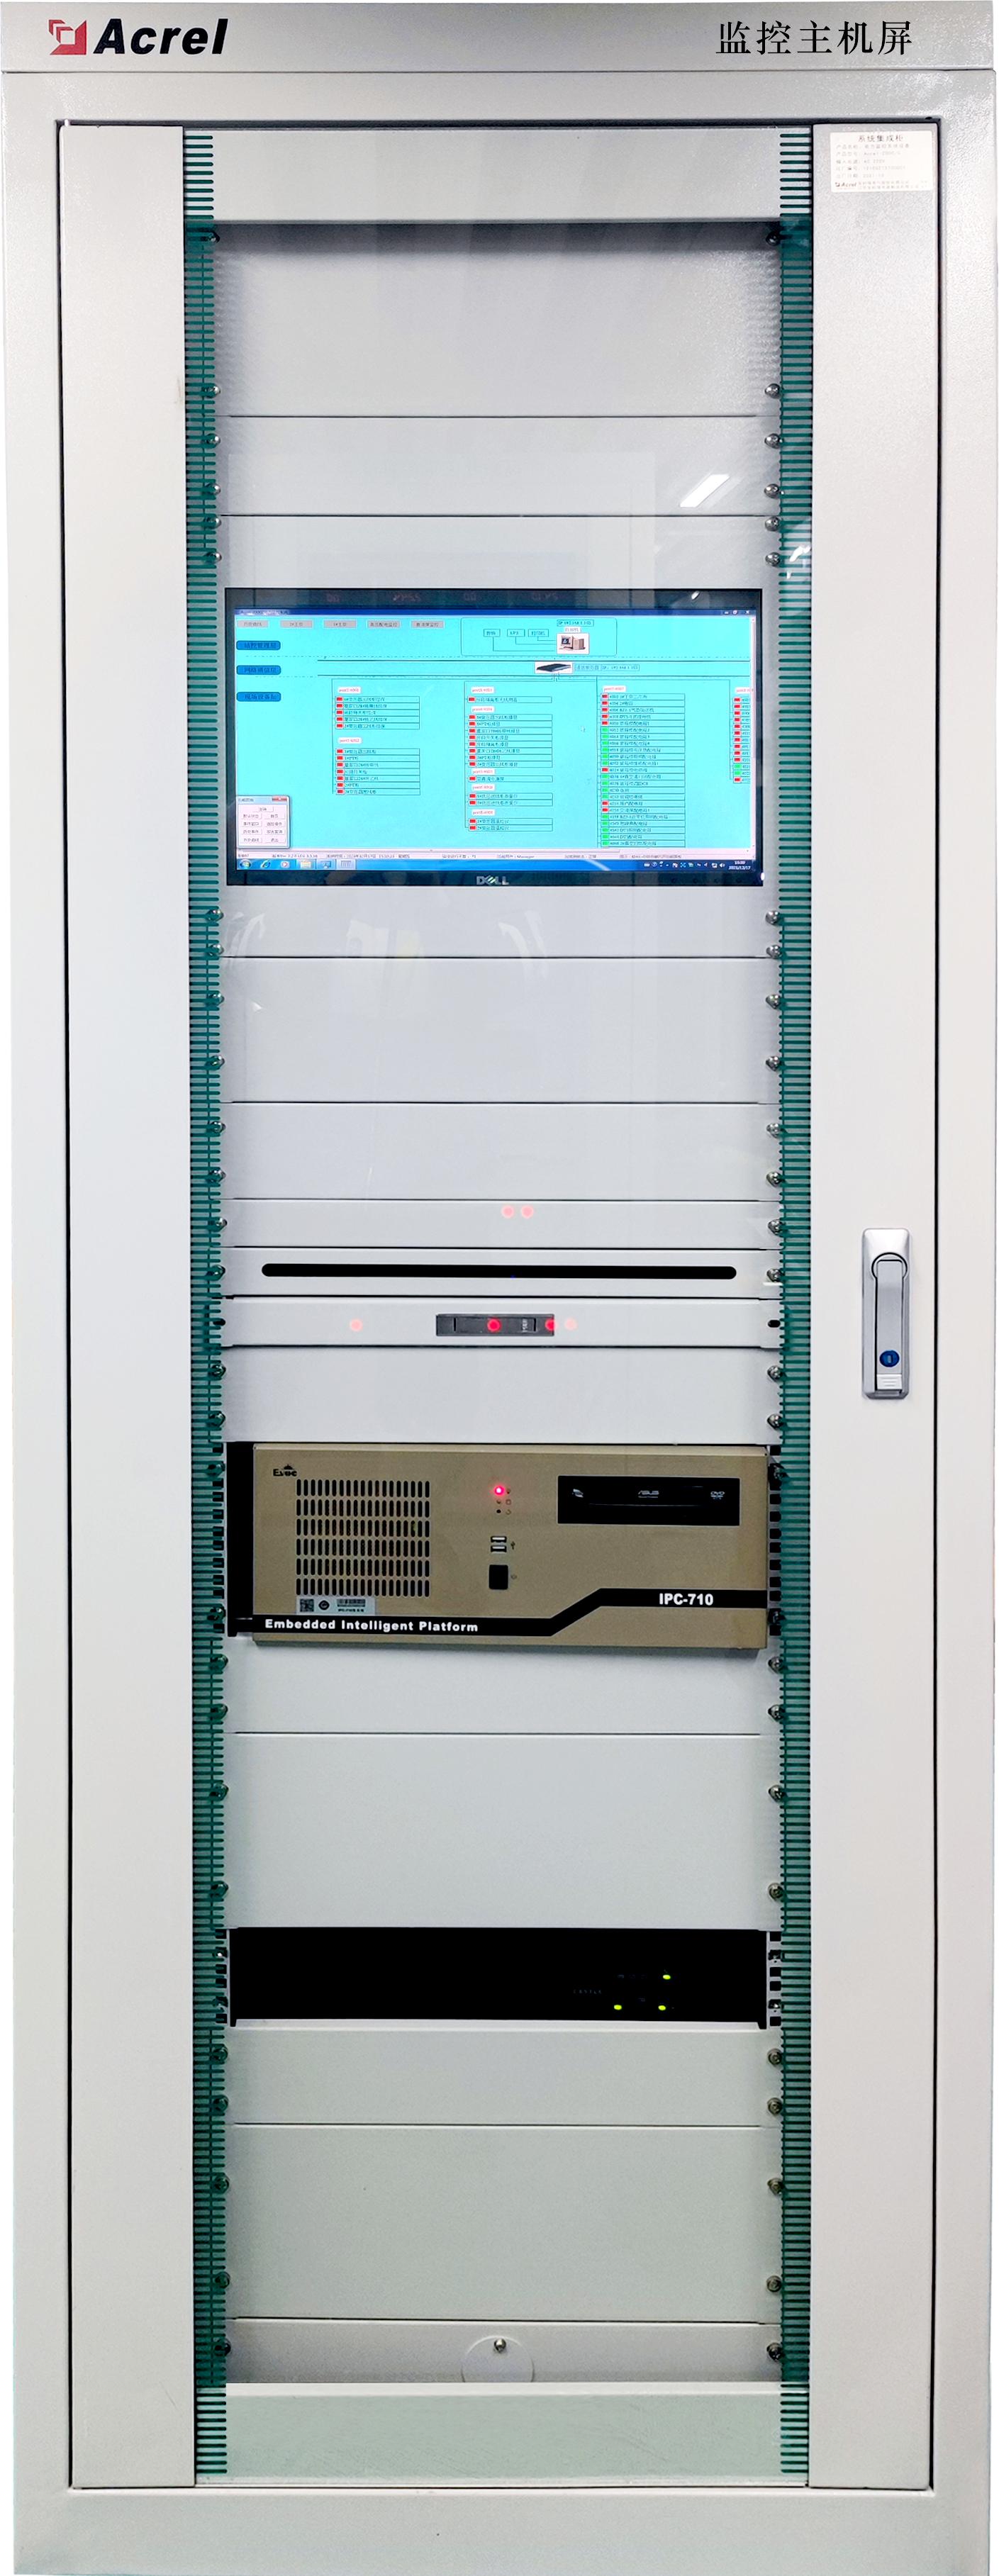 微电网能效管理平台在某食品加工厂35KV变电站应用